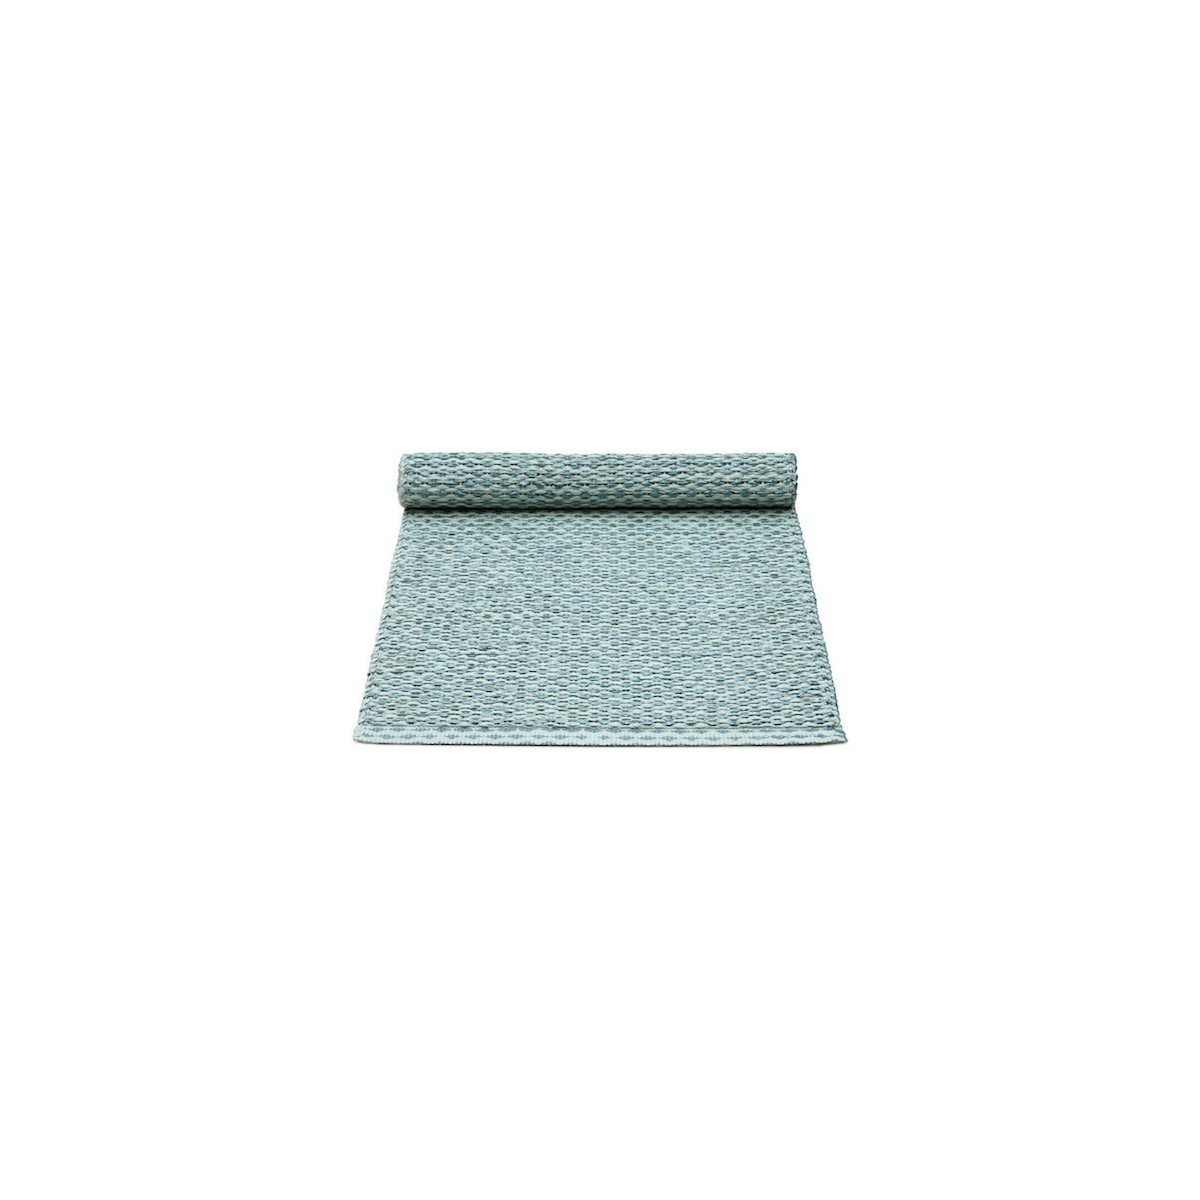 36x80cm - bleu azur métallique / turquoise pâle - chemin de table Svea